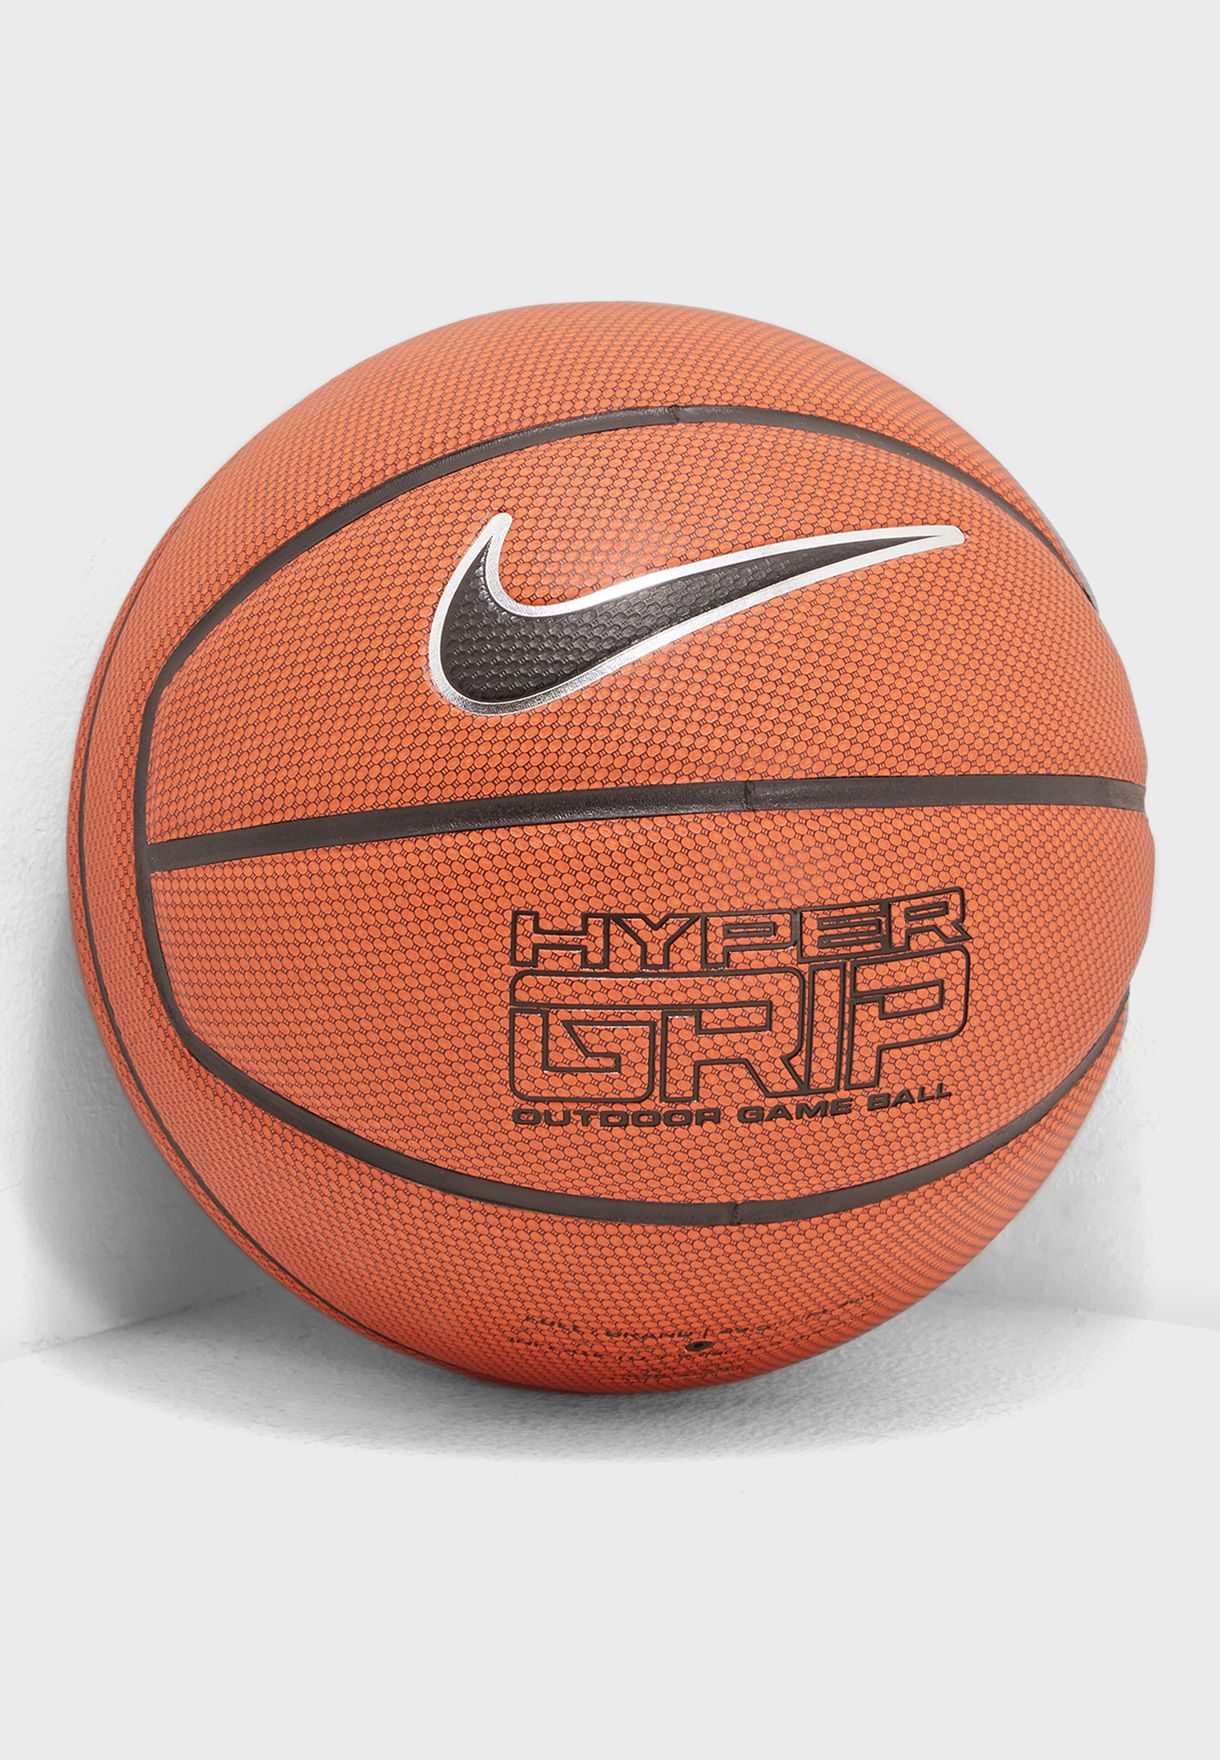 Nike Hyper Grip 4 Panel Basketball for in Jeddah